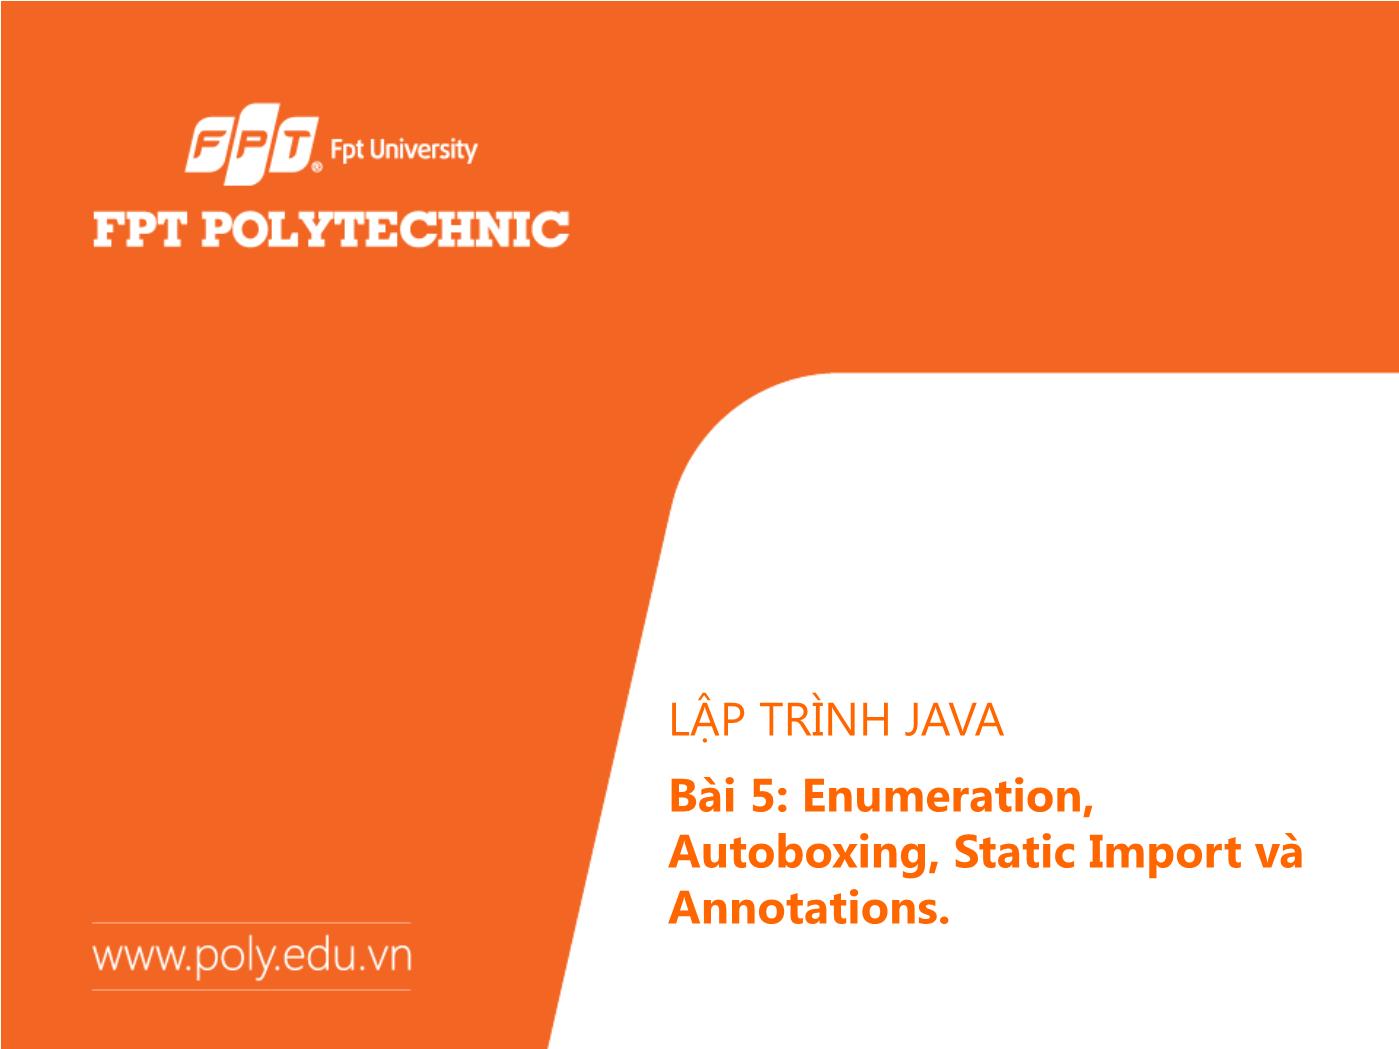 Bài giảng Lập trình Java - Bài 5: Enumeration, Autoboxing, Static Import và Annotations - Trường Đại học FPT trang 1